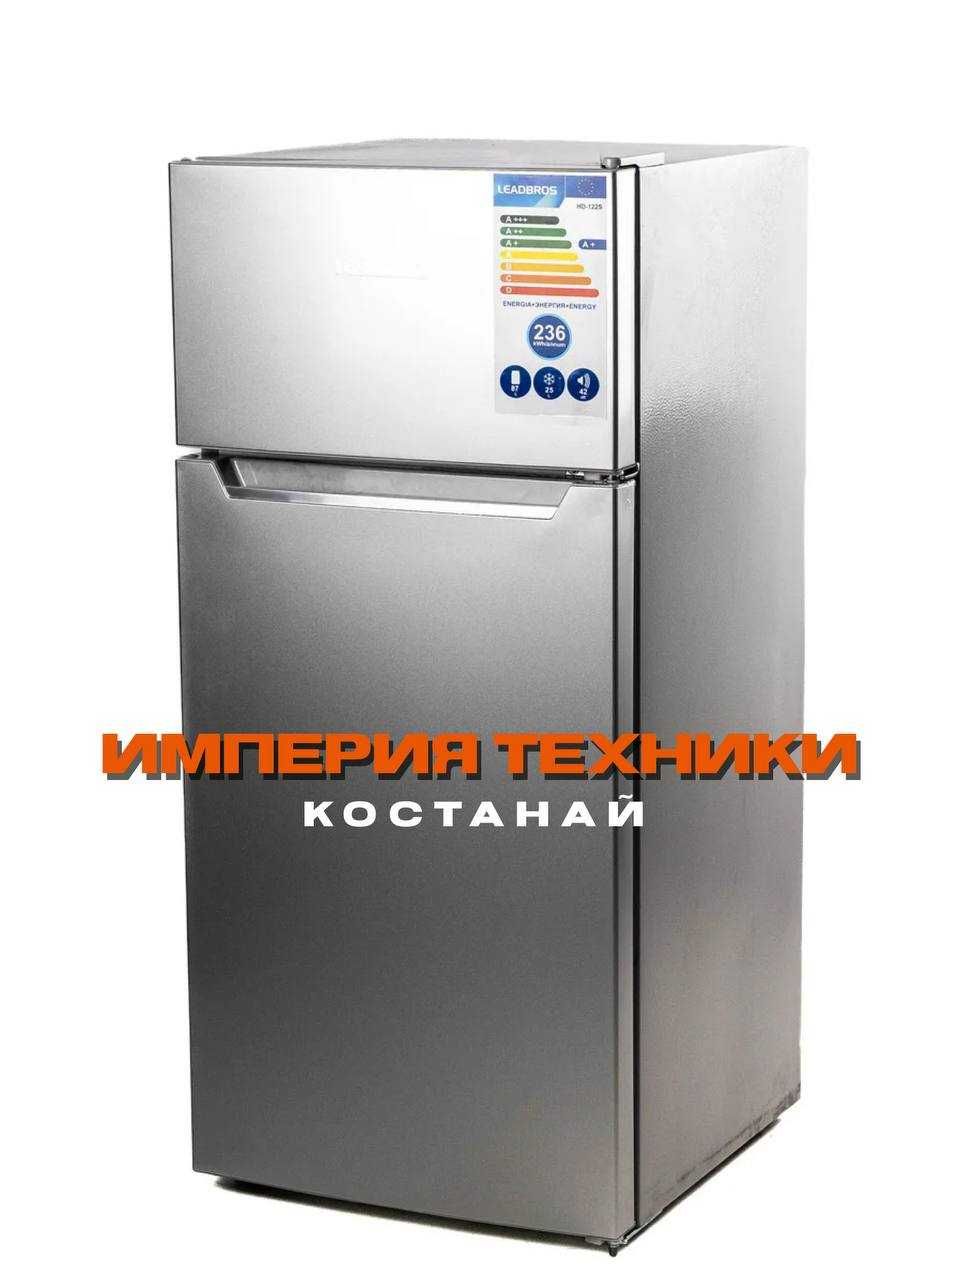 Новый холодильник Leadbros H HD-122S/Гарантия/Рассрочка